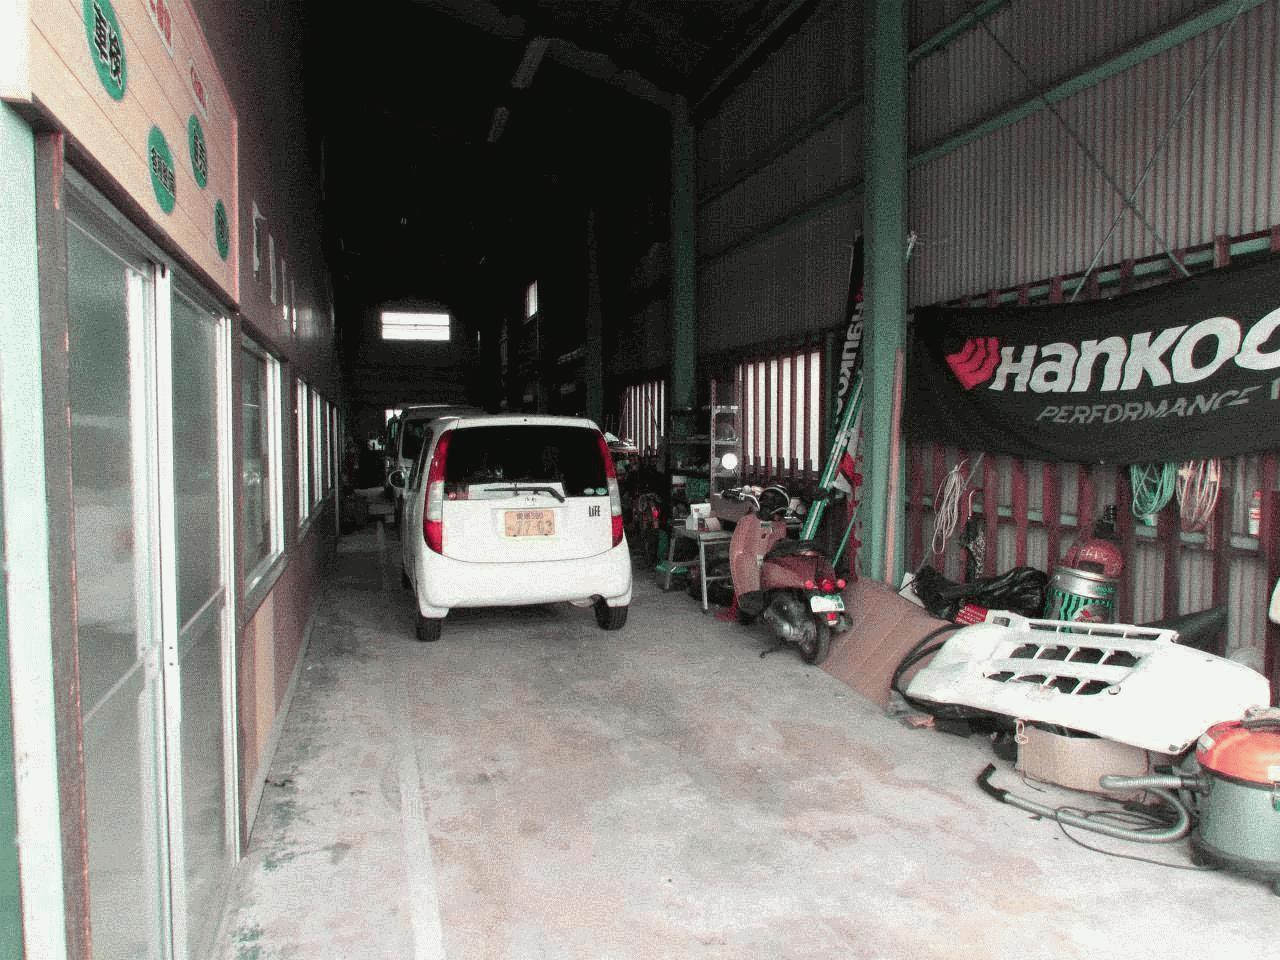 car shop Taka